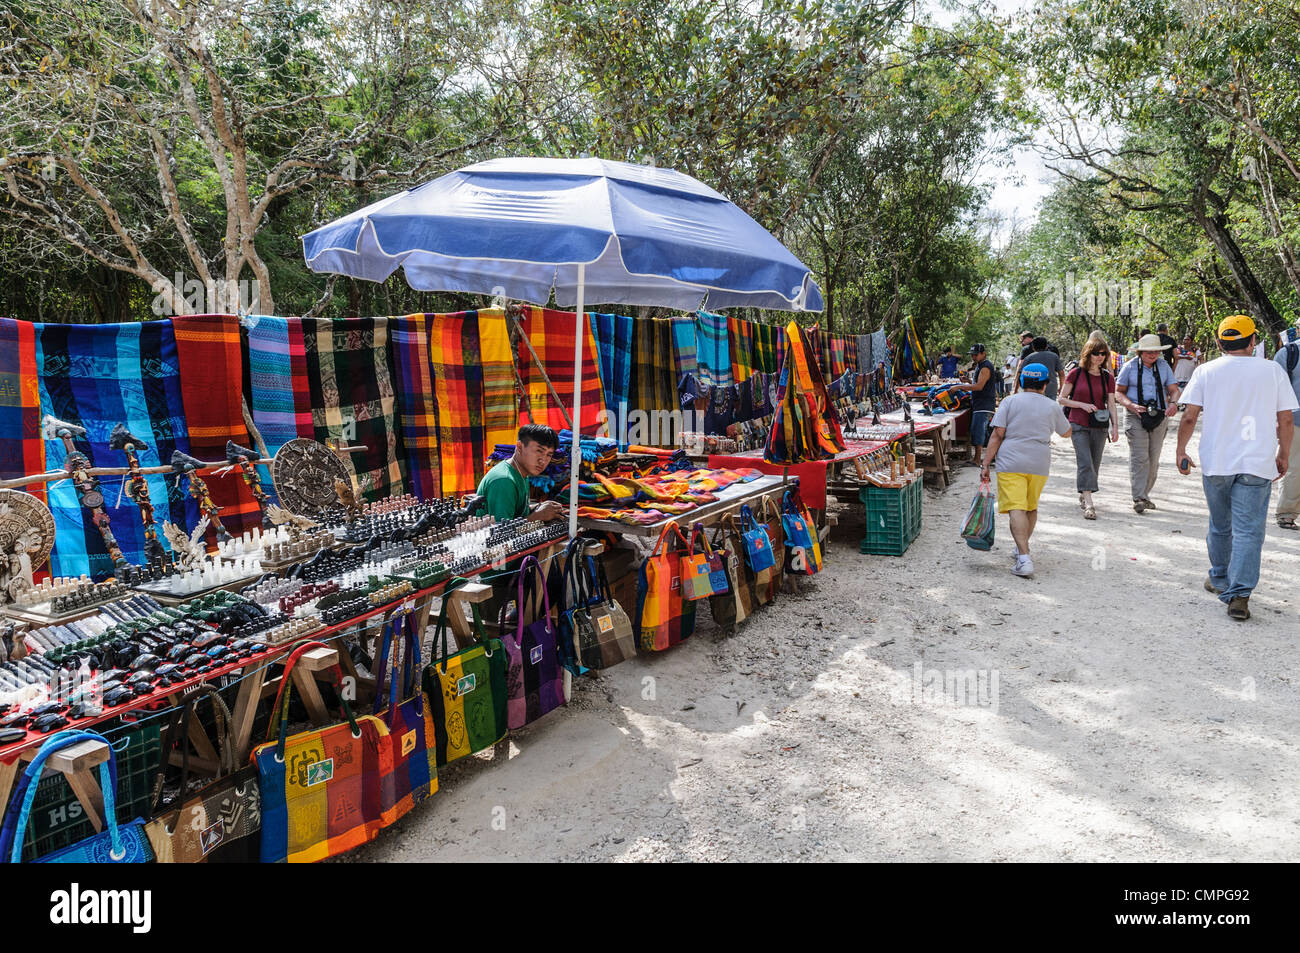 CHICHEN ITZA, Mexique - les étals de marché vendant des souvenirs locaux et de l'artisanat aux touristes visitant les ruines mayas de Chichen Itza site archéologique dans la région de Yucatan, Mexique. Banque D'Images